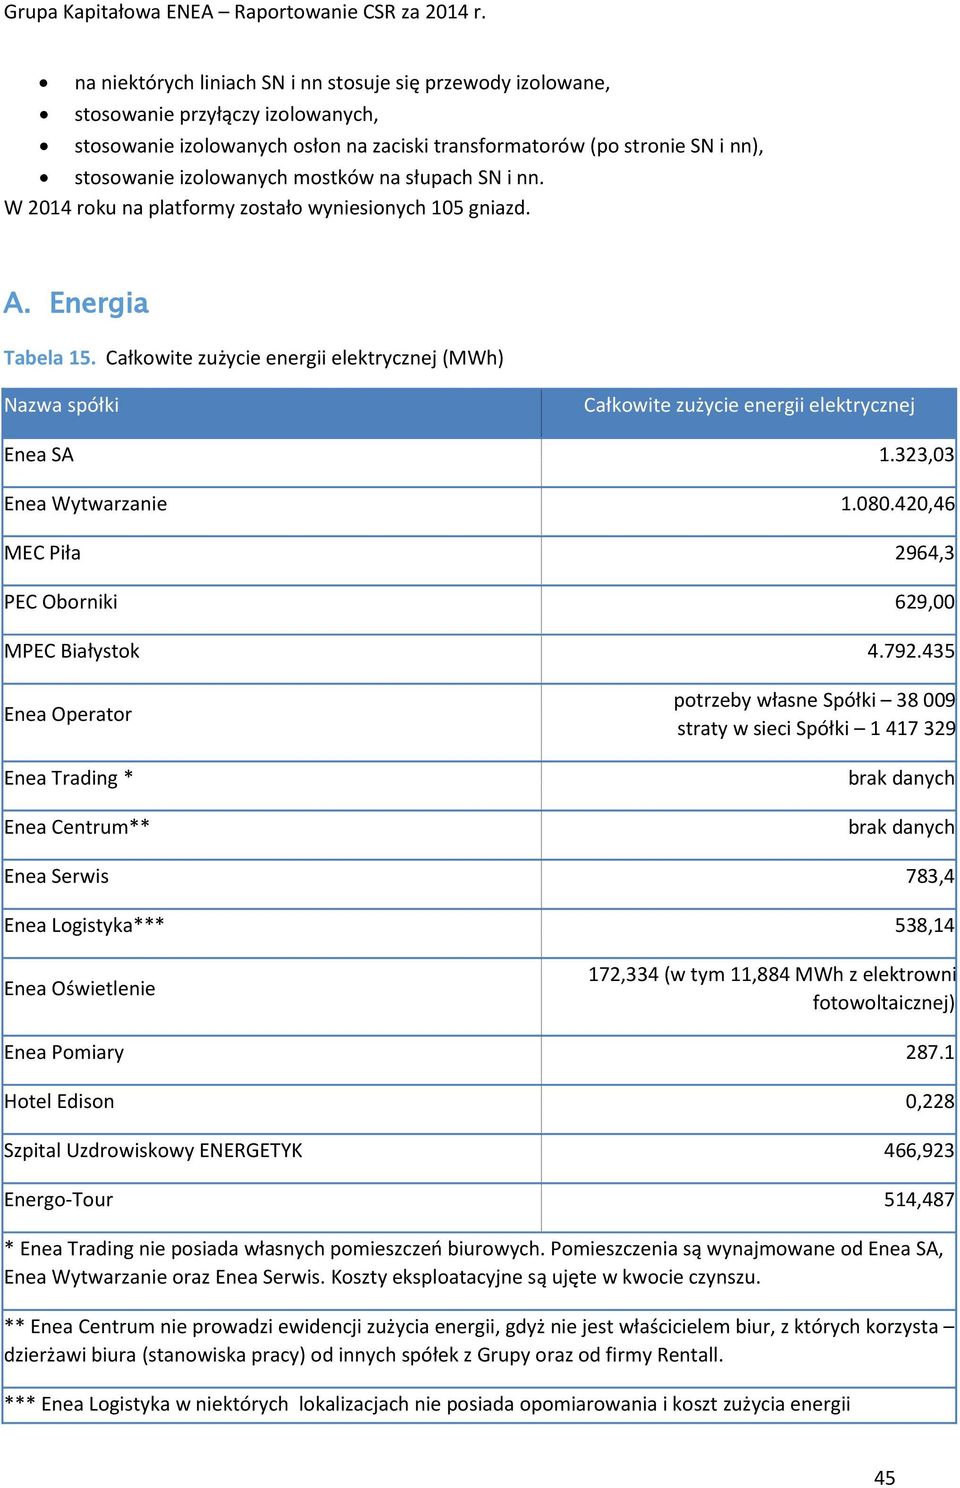 Całkowite zużycie energii elektrycznej (MWh) Nazwa spółki Całkowite zużycie energii elektrycznej Enea SA 1.323,03 Enea Wytwarzanie 1.080.420,46 MEC Piła 2964,3 PEC Oborniki 629,00 MPEC Białystok 4.